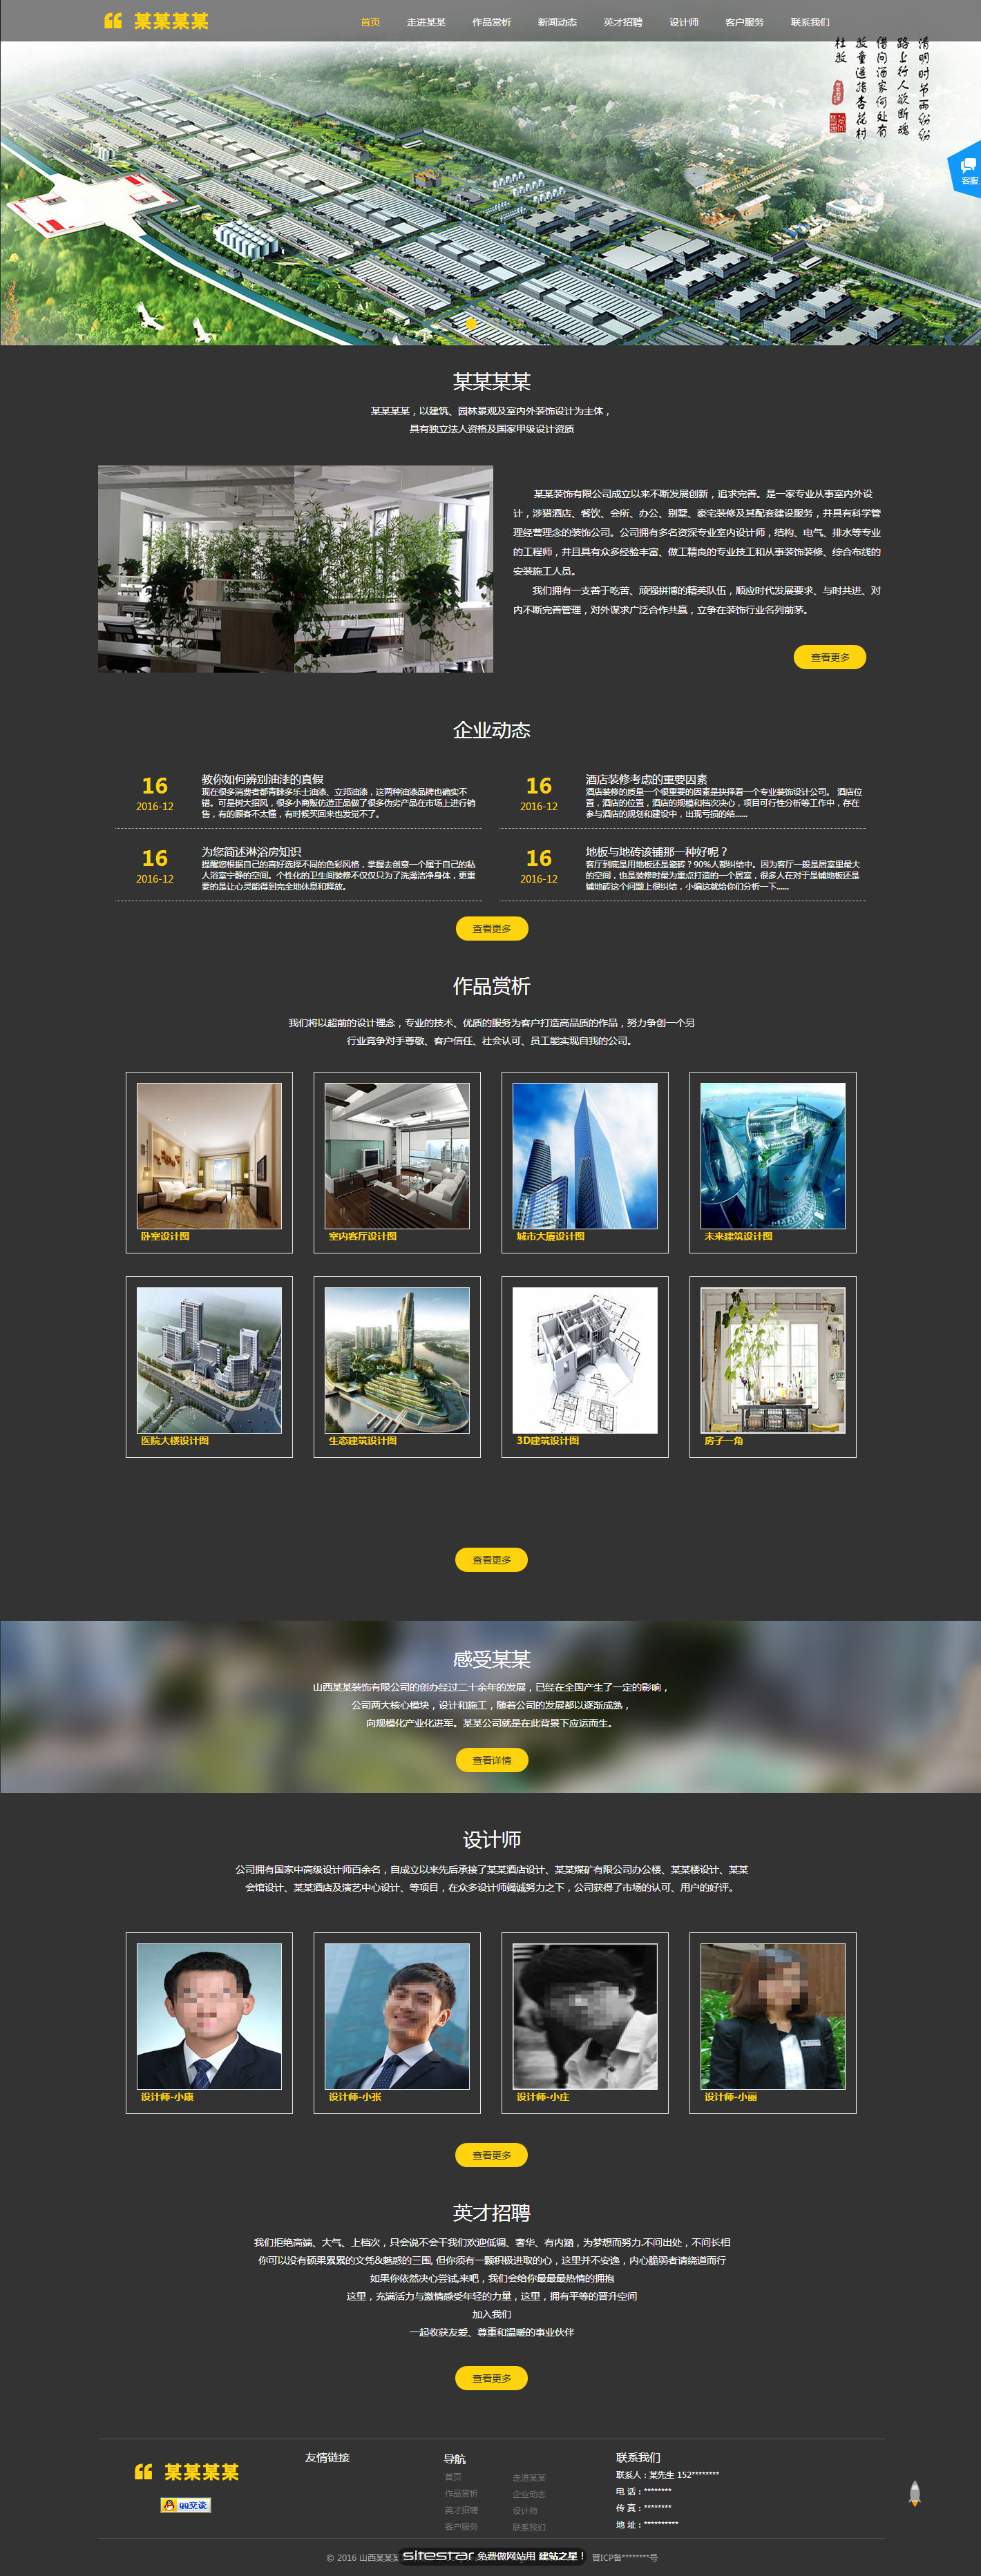 企业网站精美模板-design-94